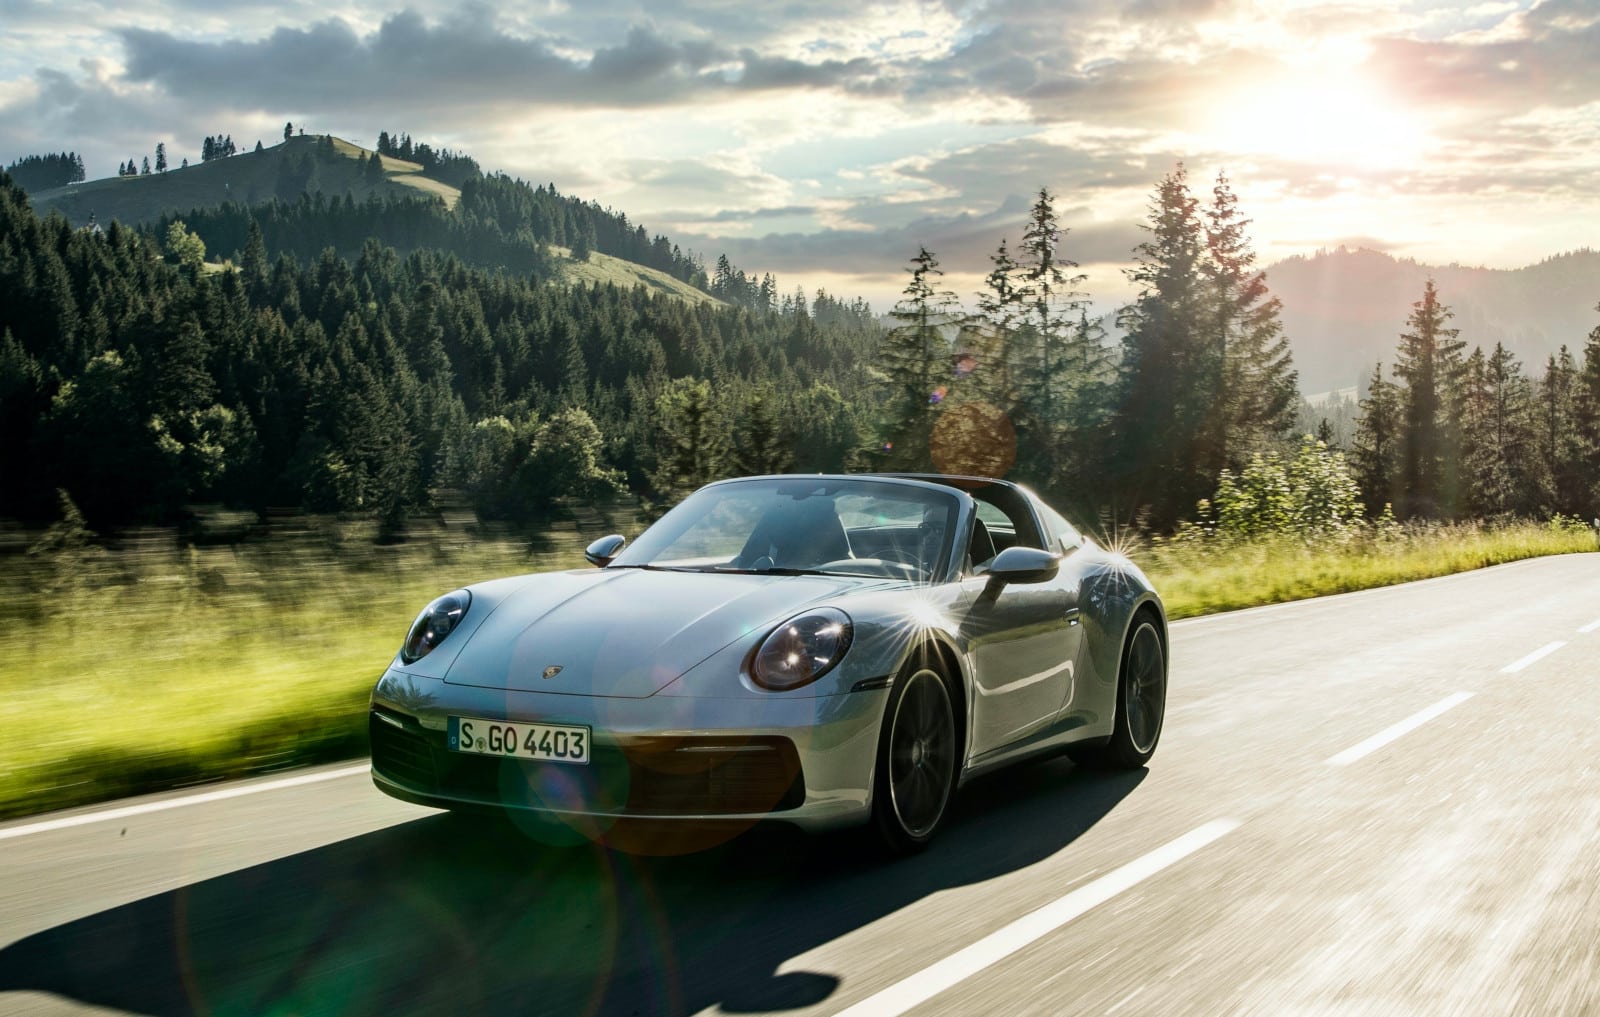 Porsche entrega 116 mil 964 vehículos a nivel mundial